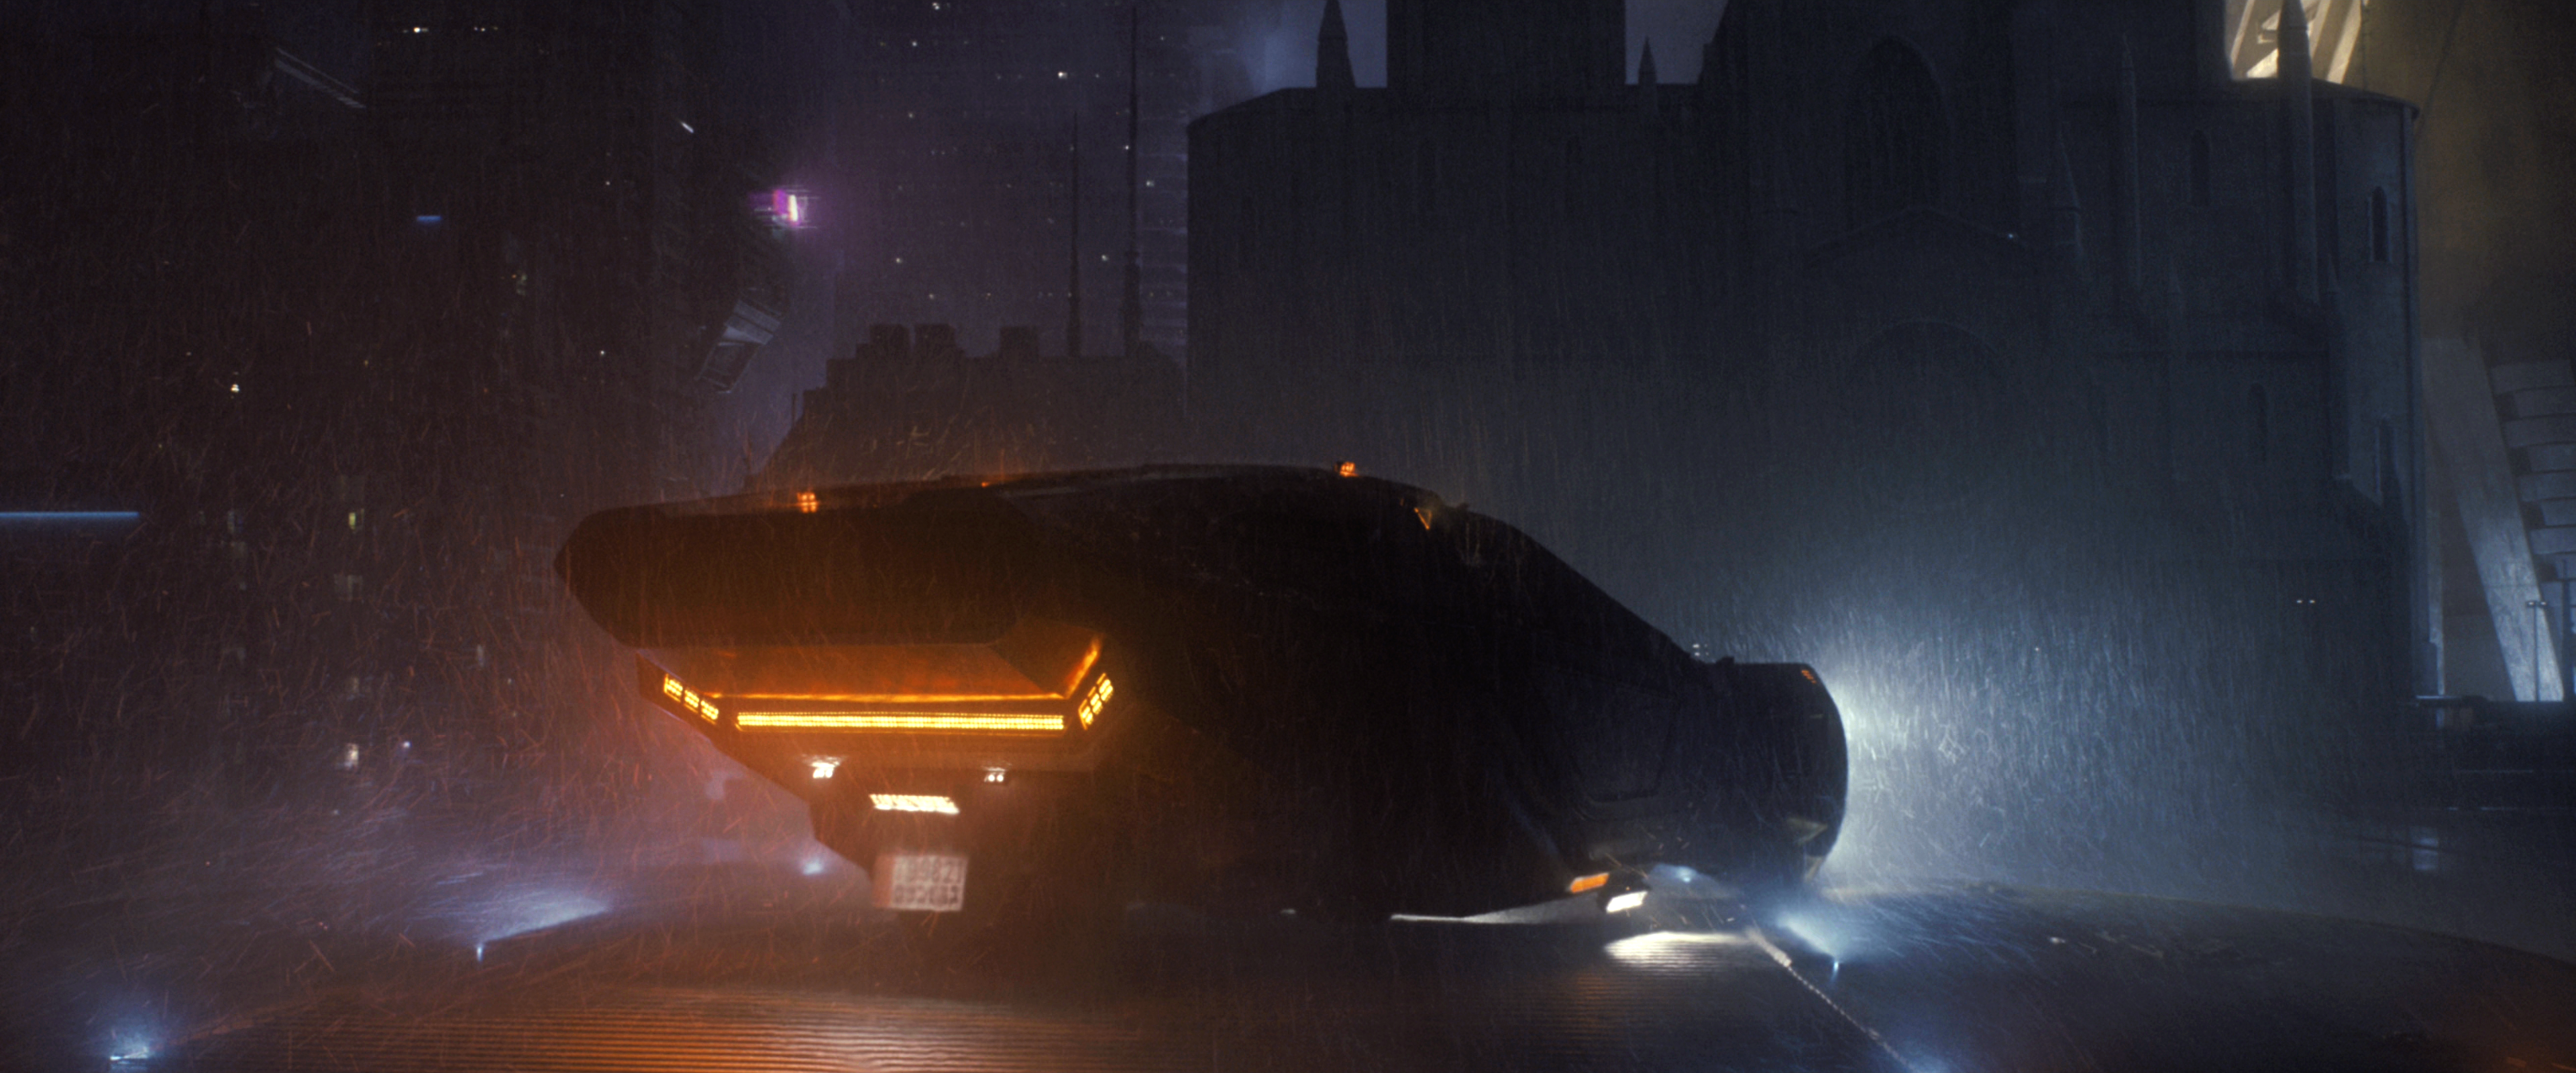 General 3840x1600 Blade Runner Blade Runner 2049 cyberpunk movies futuristic city vehicle rain dark night 2017 (Year)